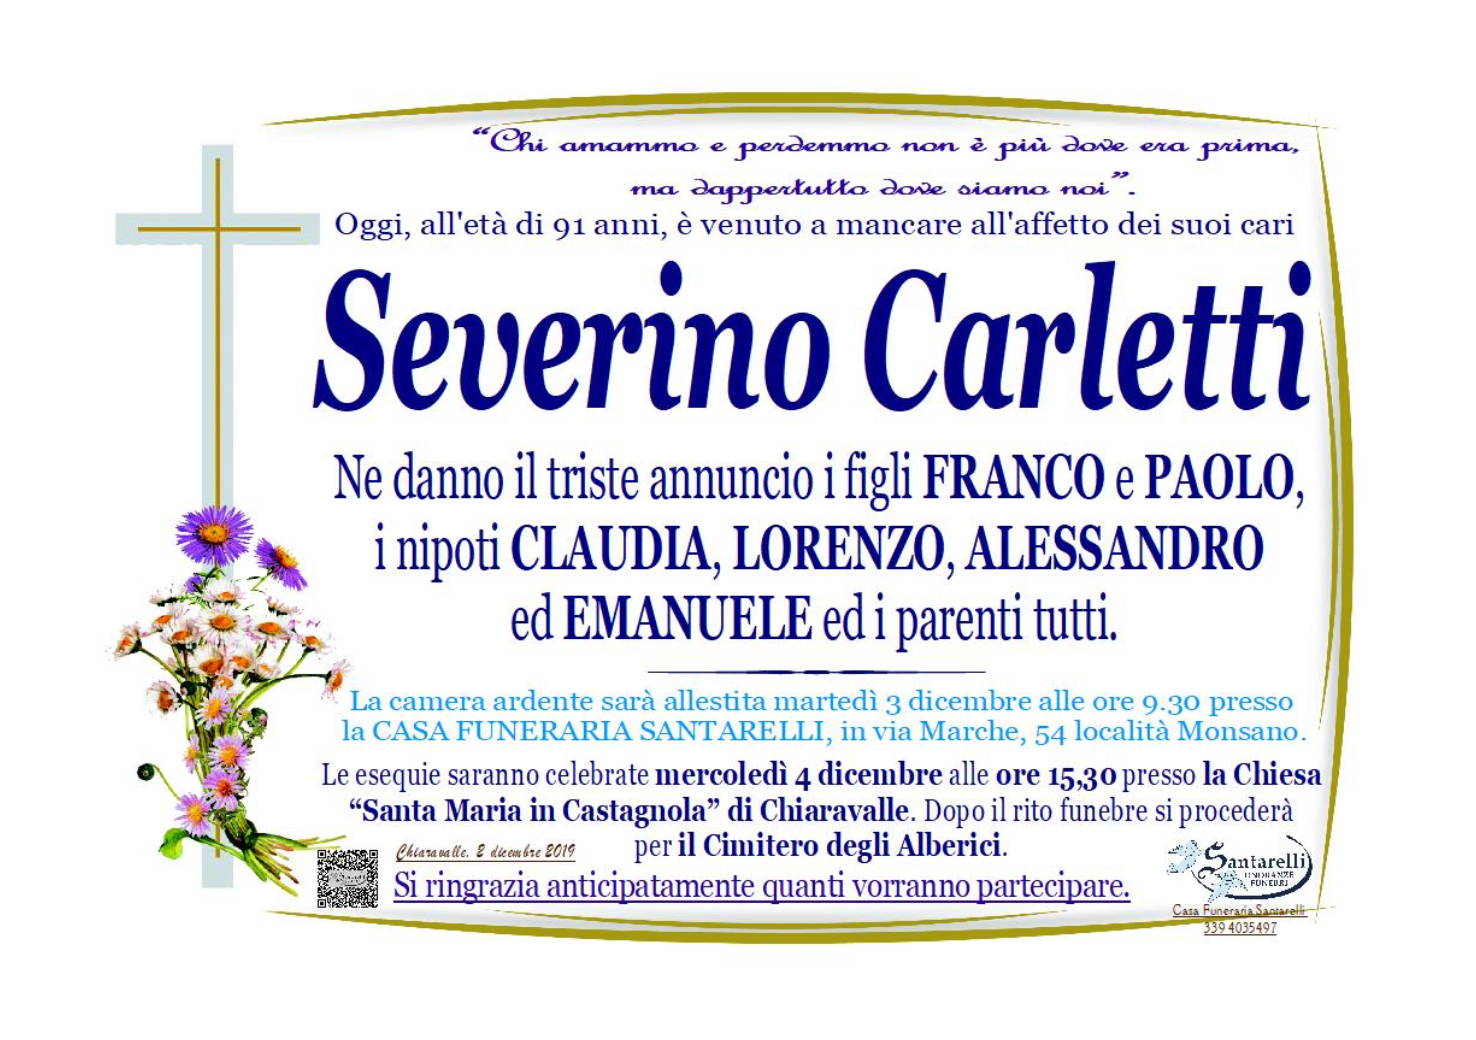 Severino Carletti